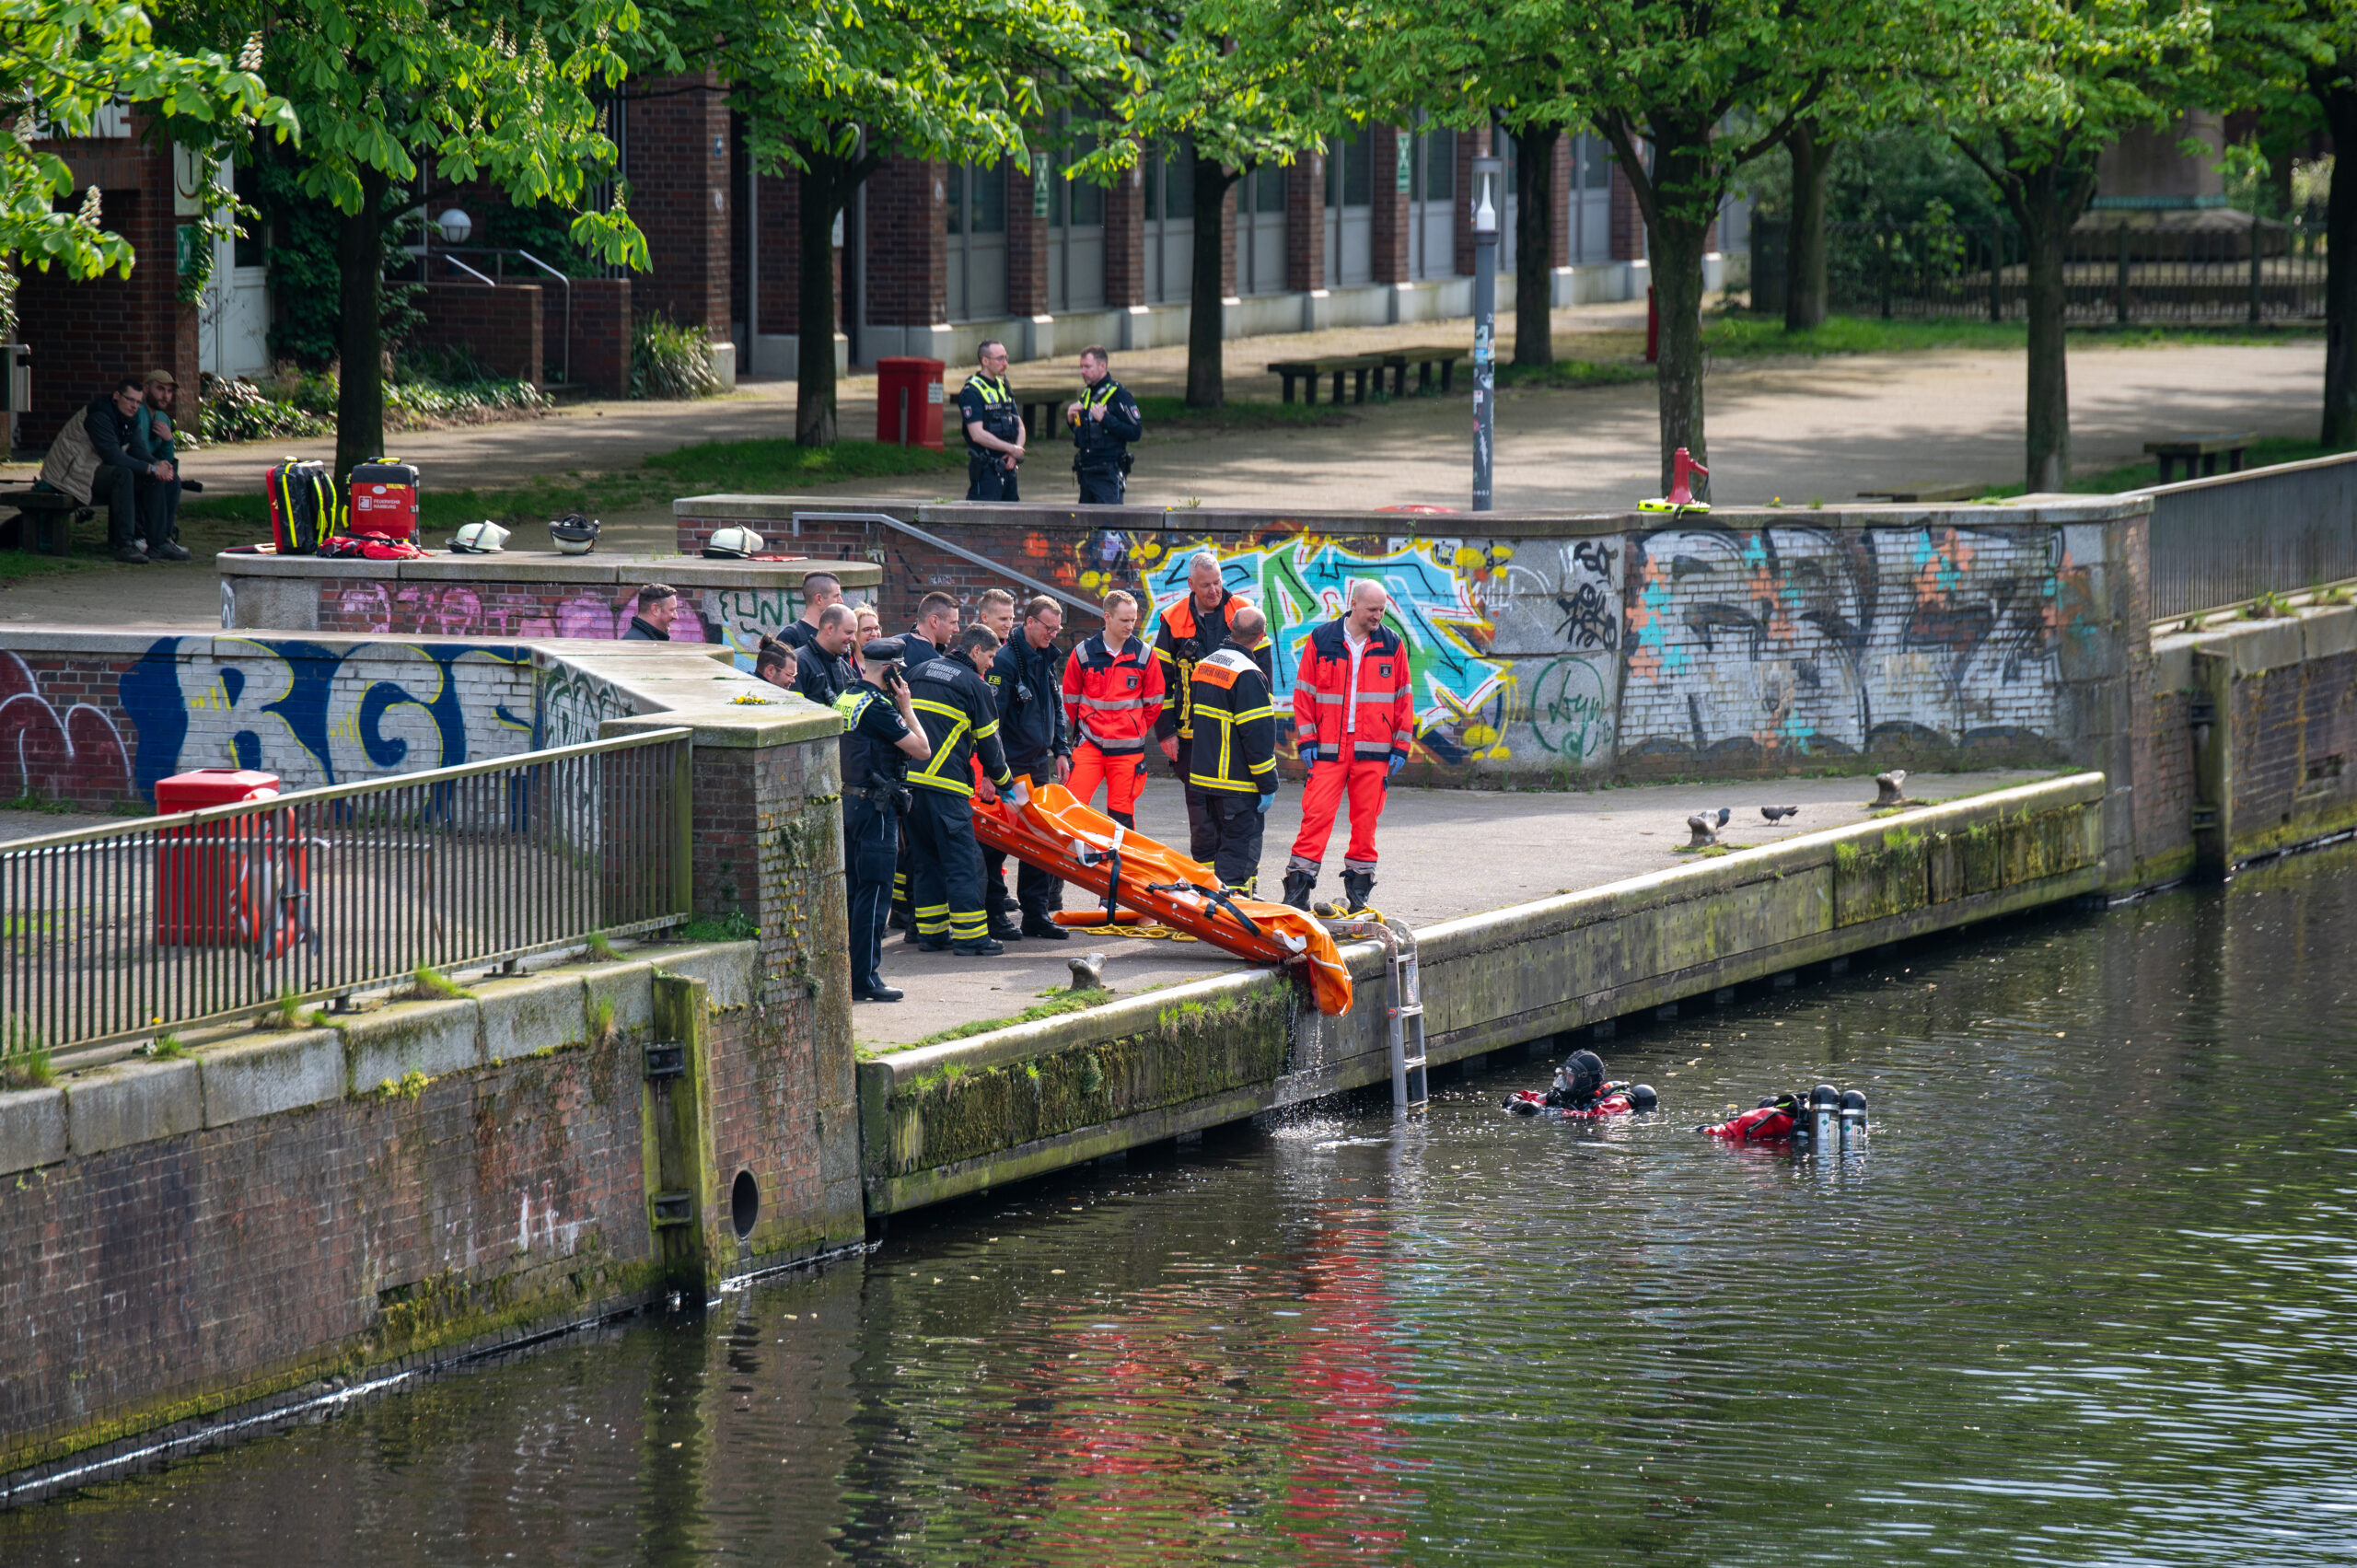 Einsatzkräfte der Polizei und Feuerwehr stehen am Ufer des Mittelkanals, wo zuvor eine leblose Person gefunden wurde.